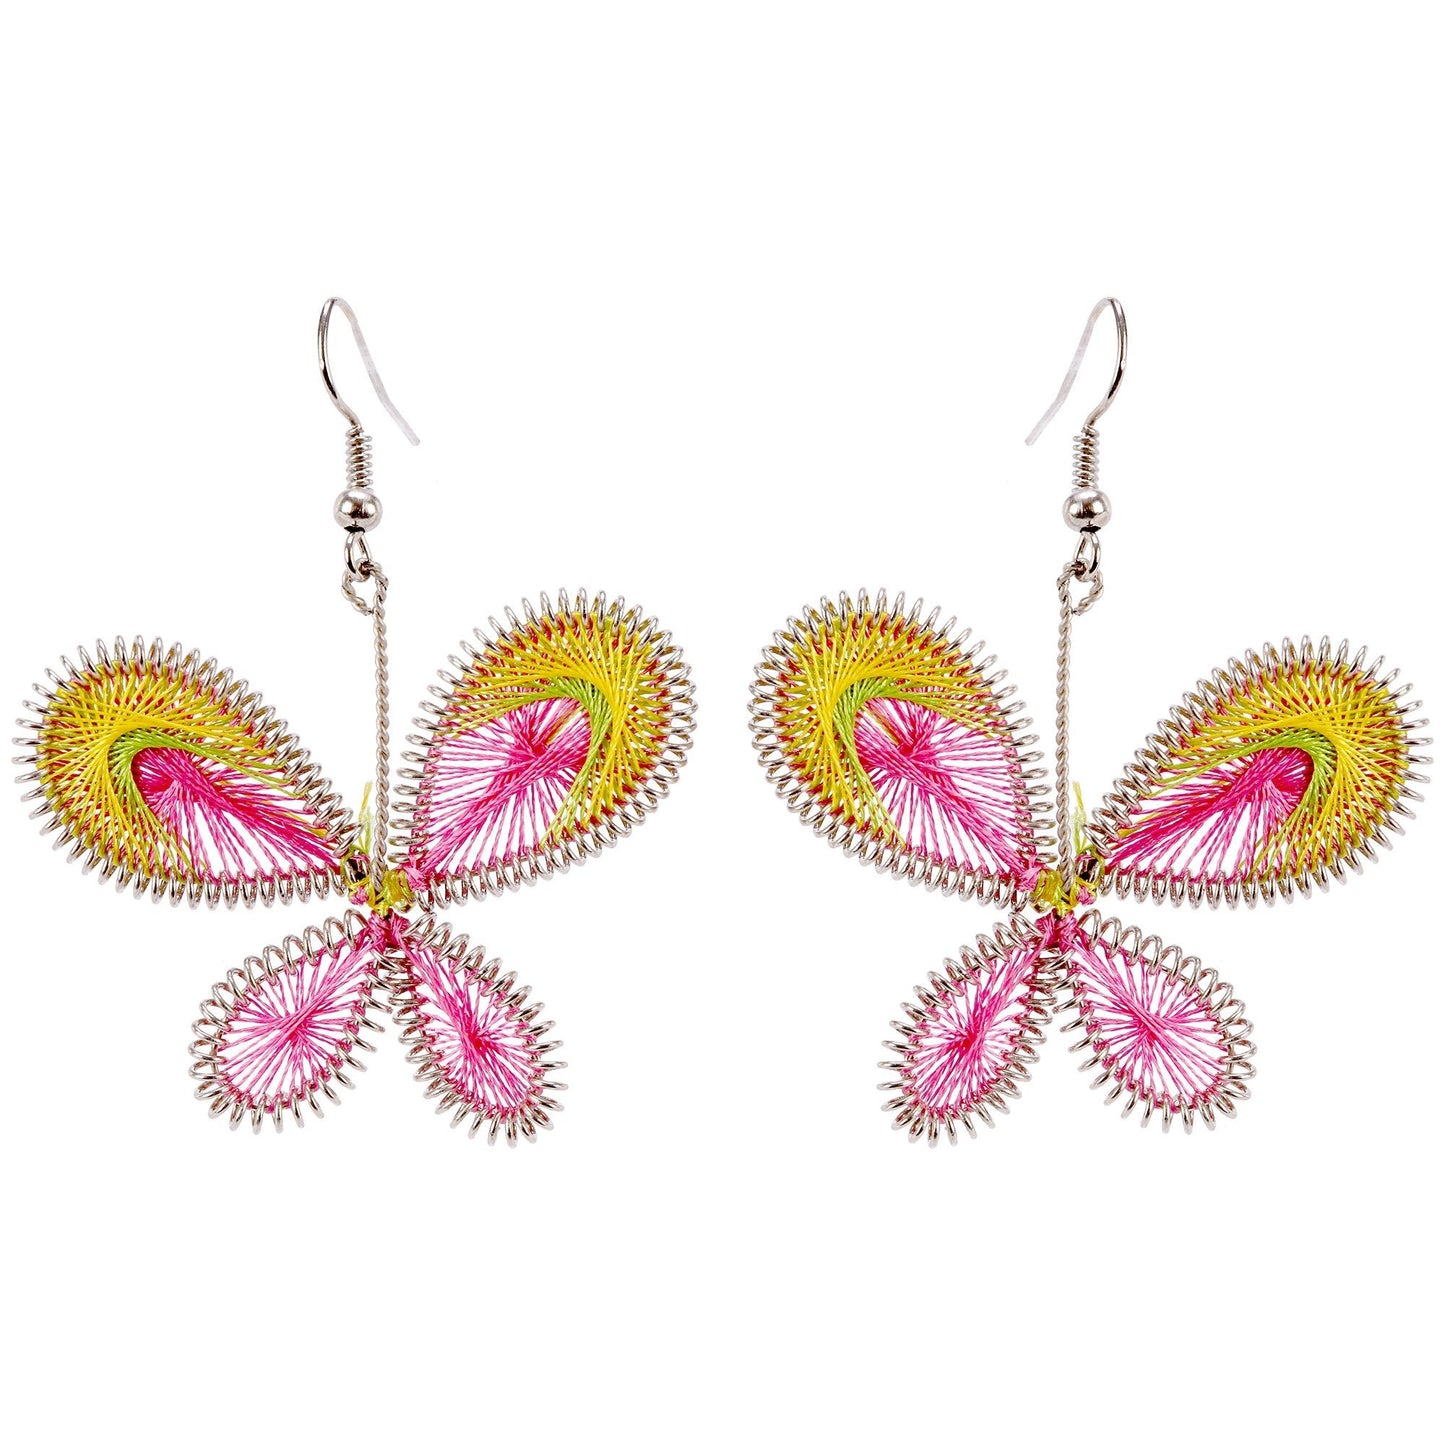 Art Of Thread Butterfly Earrings